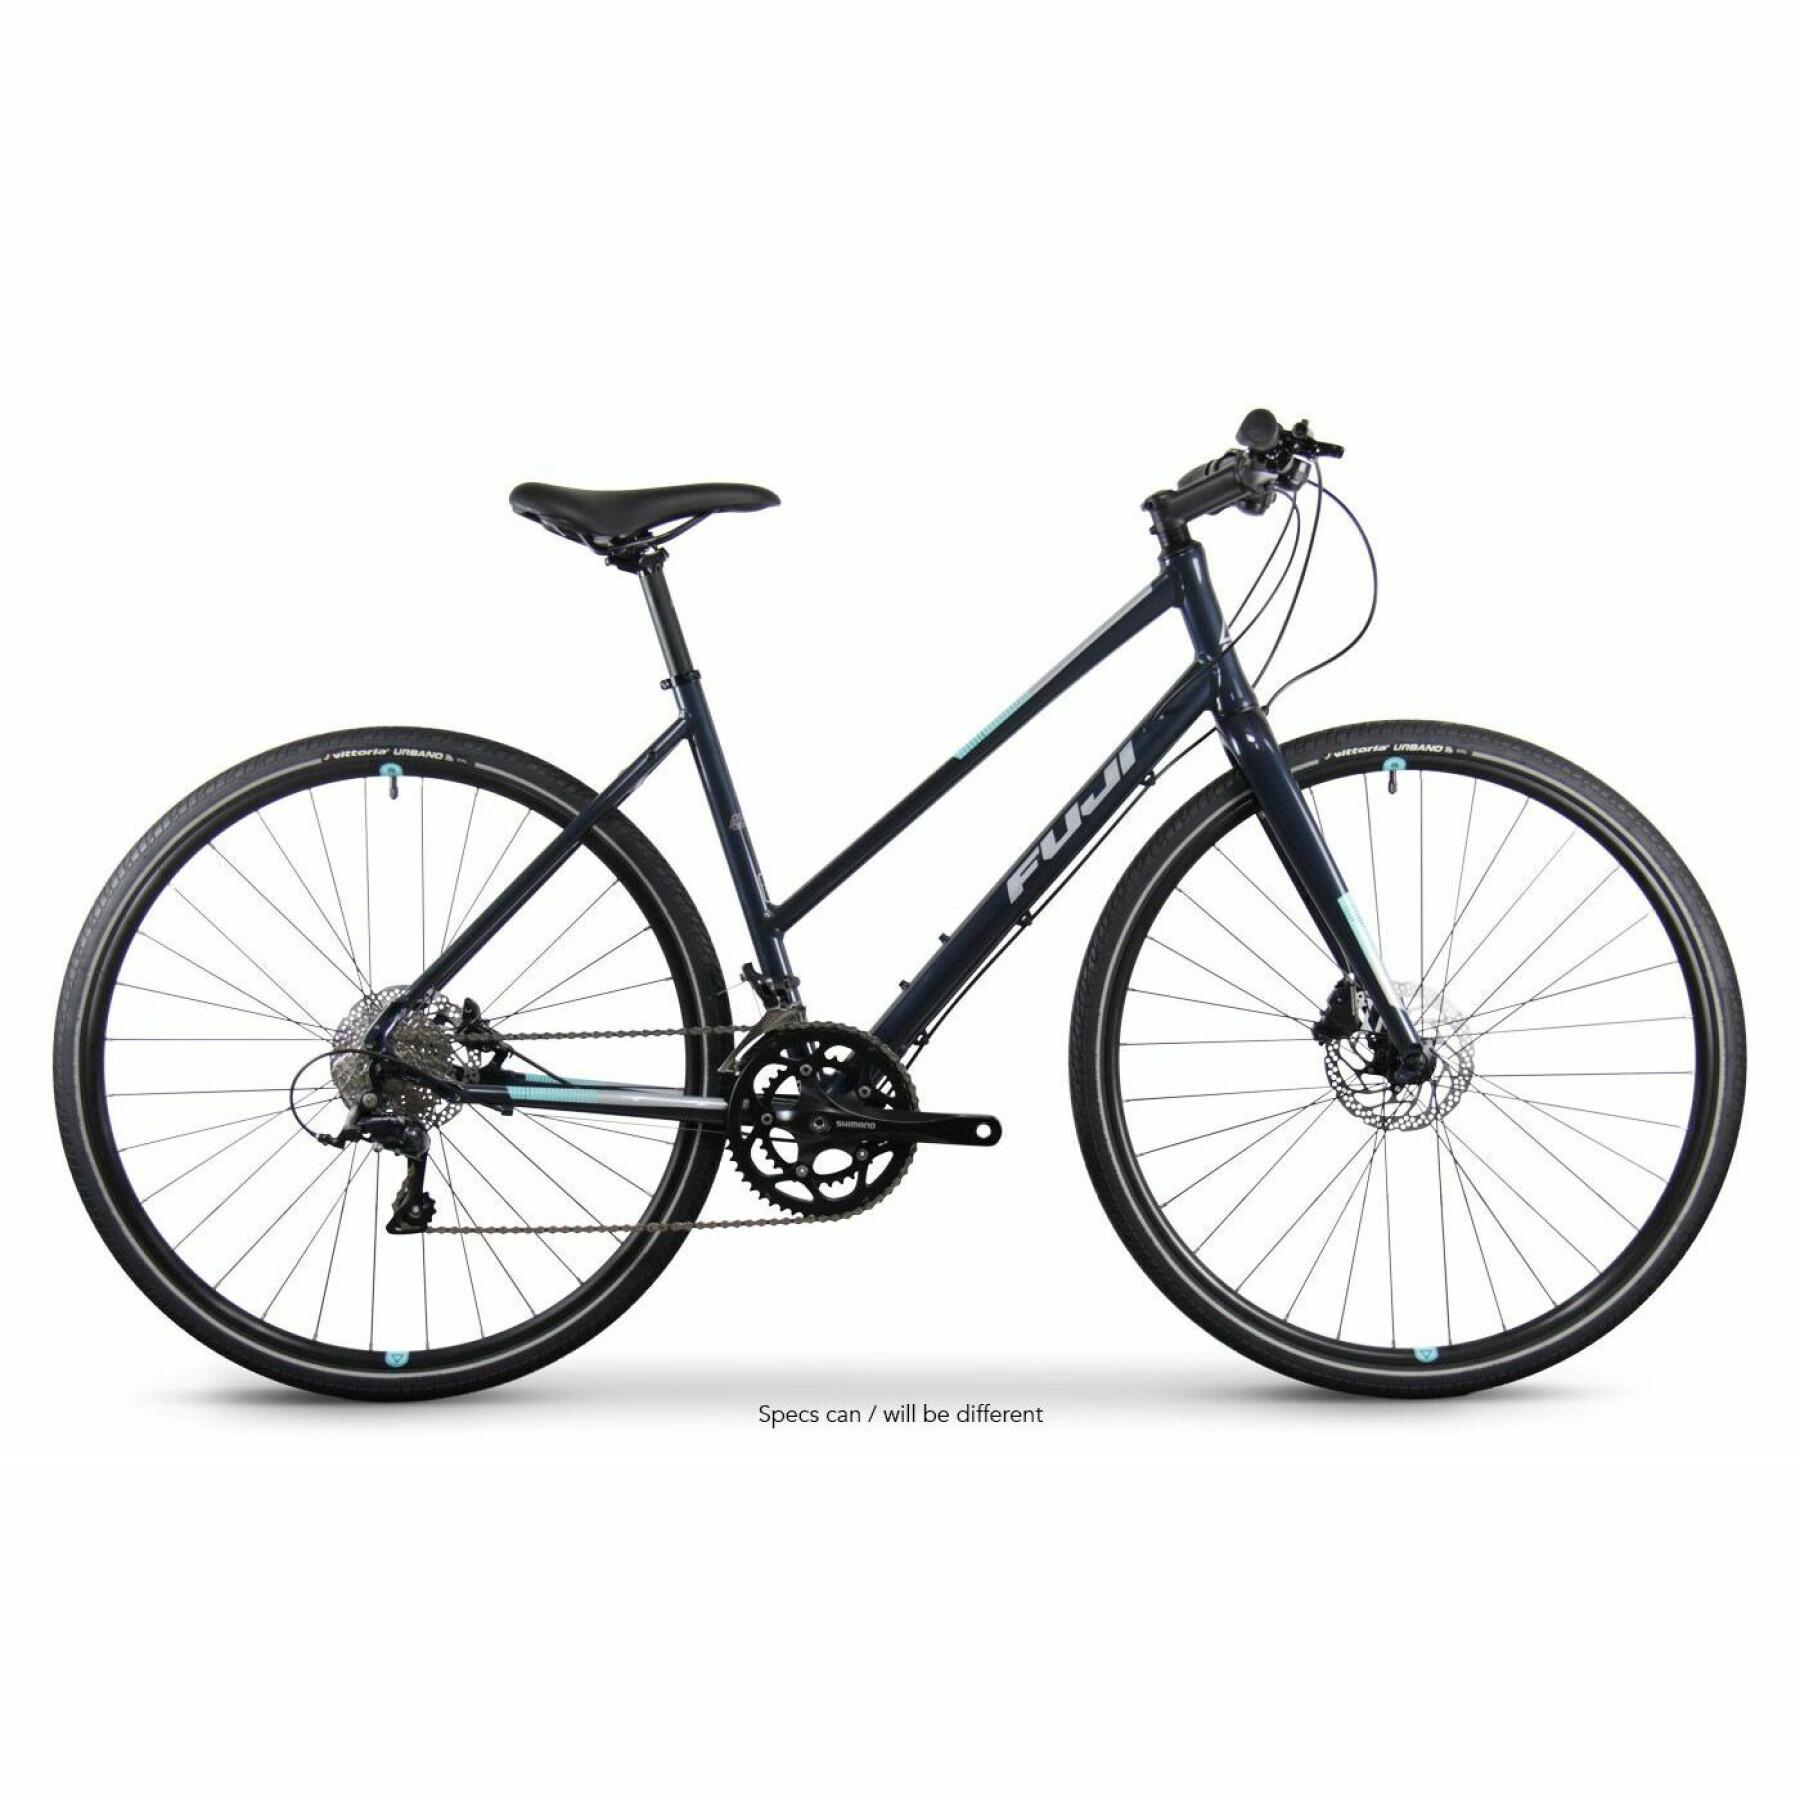 Bicicleta Fuji Absolute 1.3 st 2022